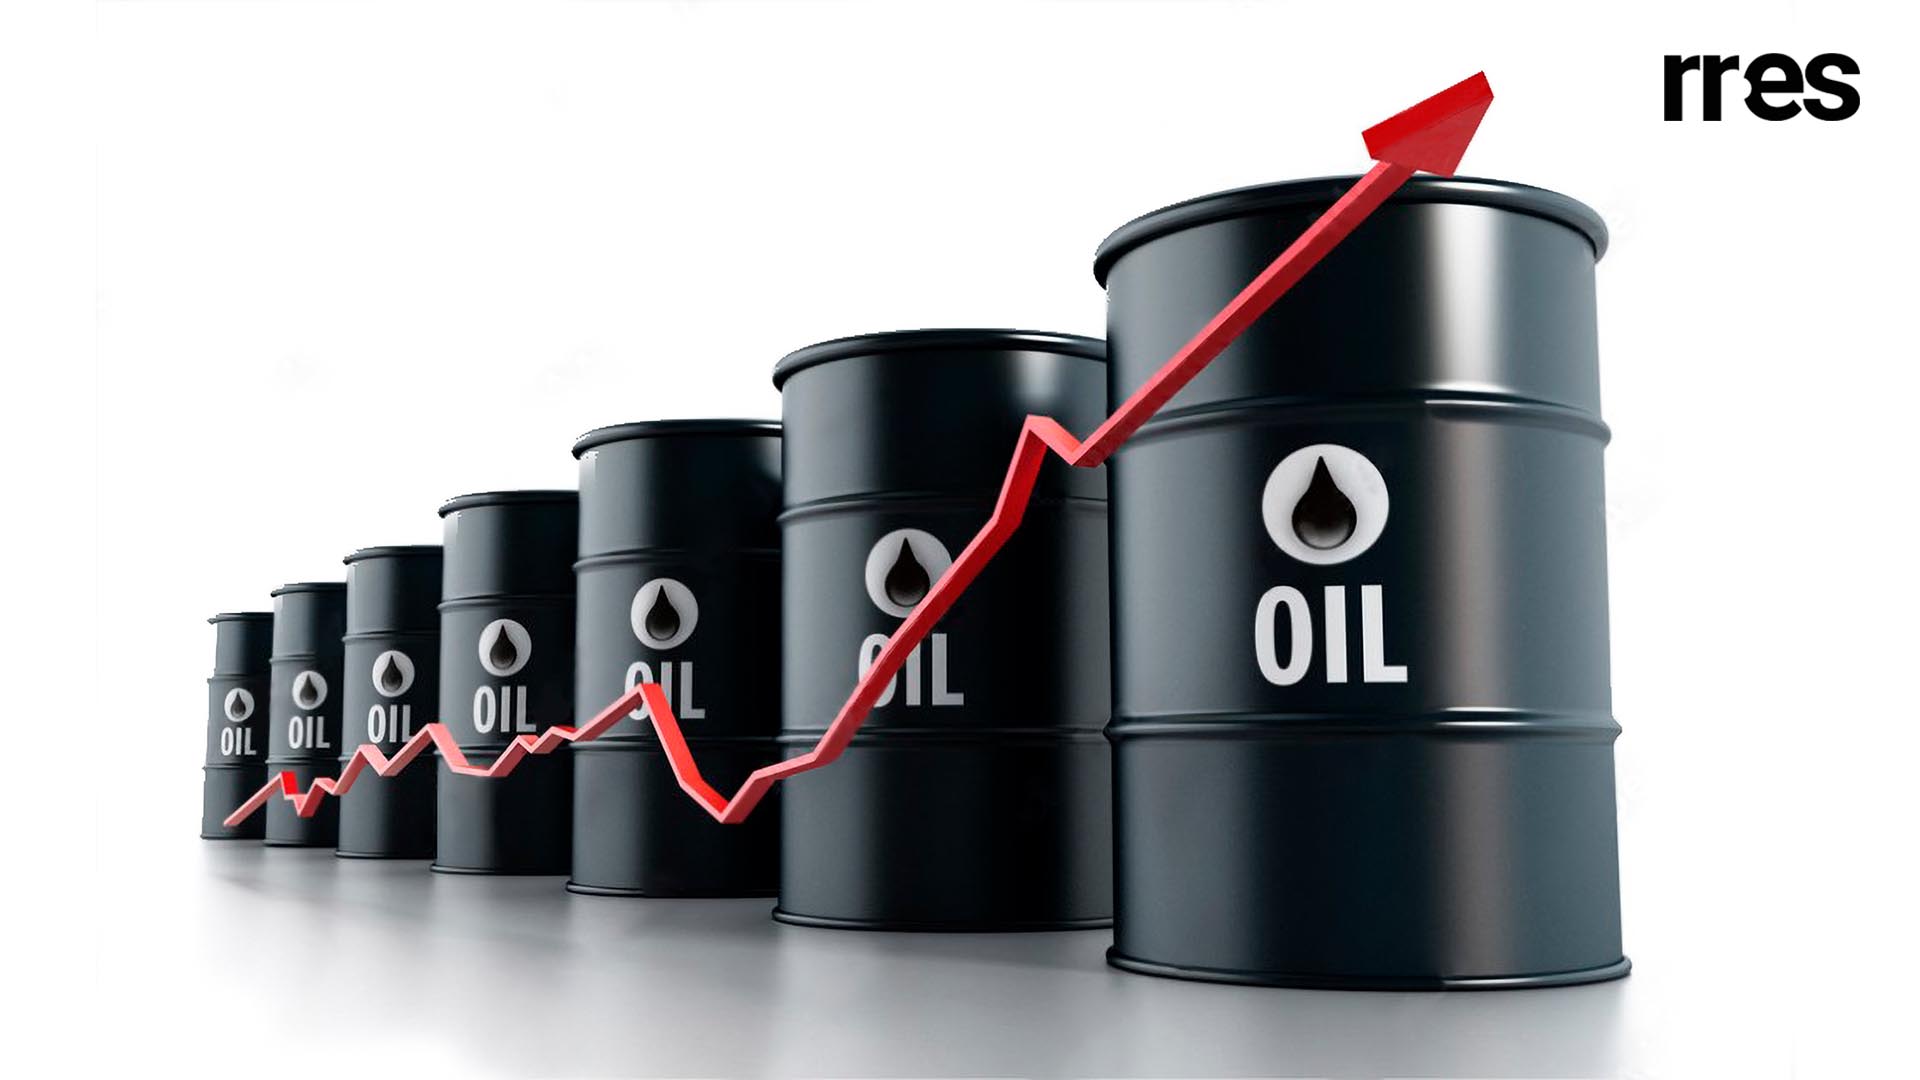 #PedagogíaEconómica | ¿Podrá Venezuela aprovechar el alza en los precios del petróleo?, por Víctor Álvarez R.